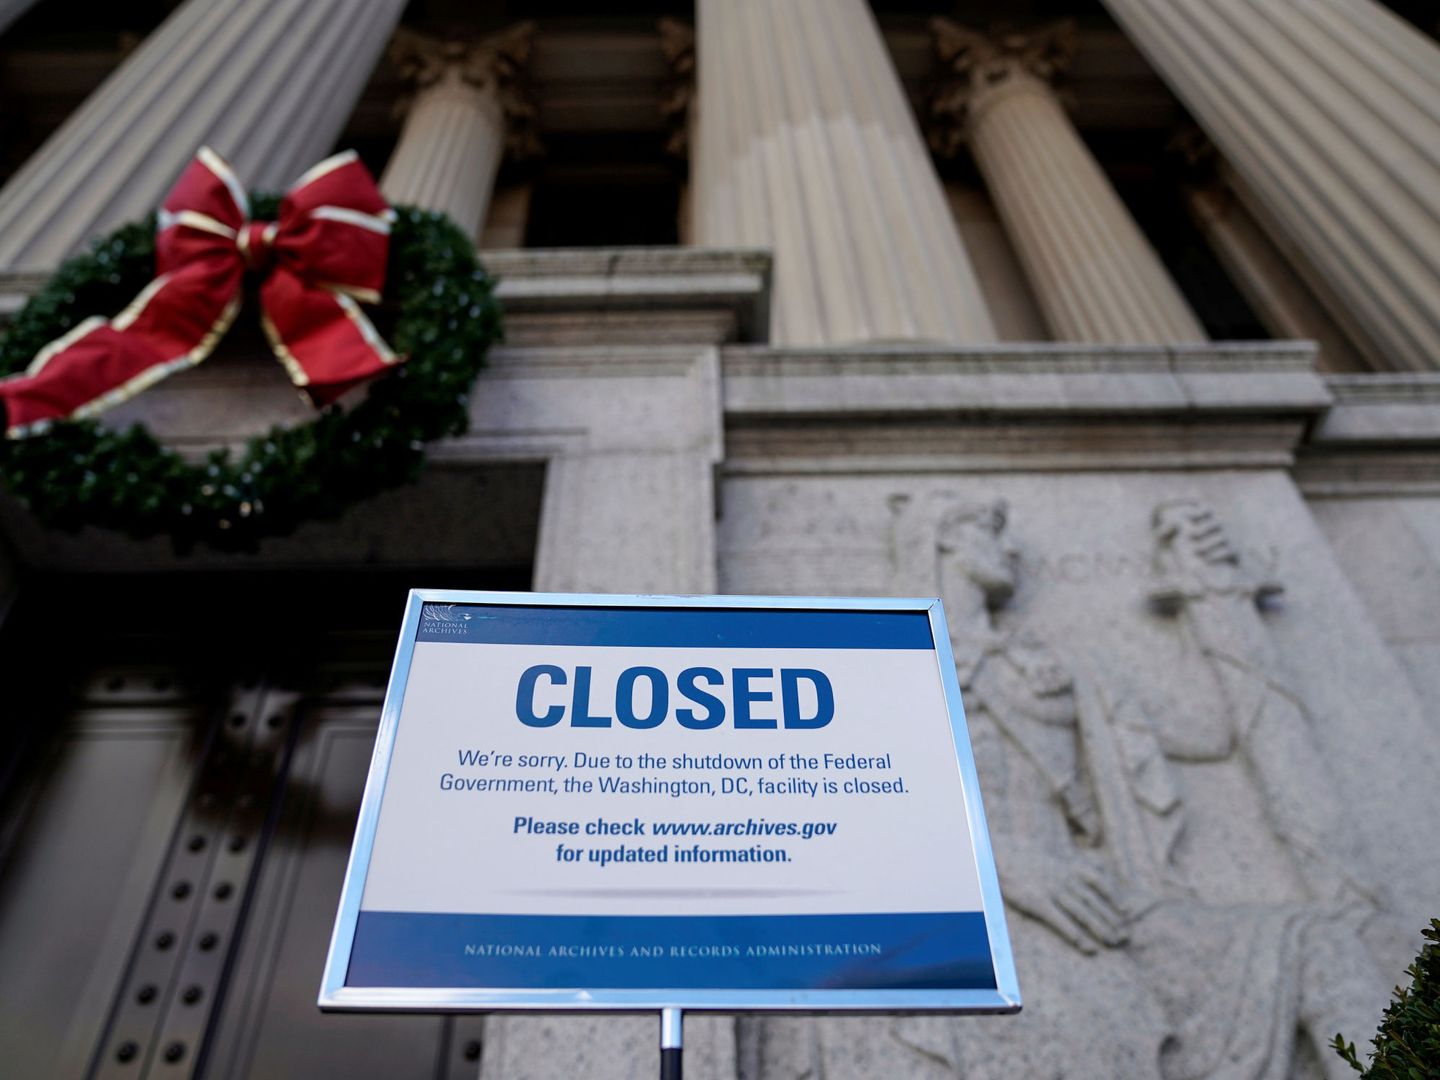 Un cartel indica que el Archivo Nacional está cerrado durante el cierre parcial de la Administración, en Washington. (Reuters)